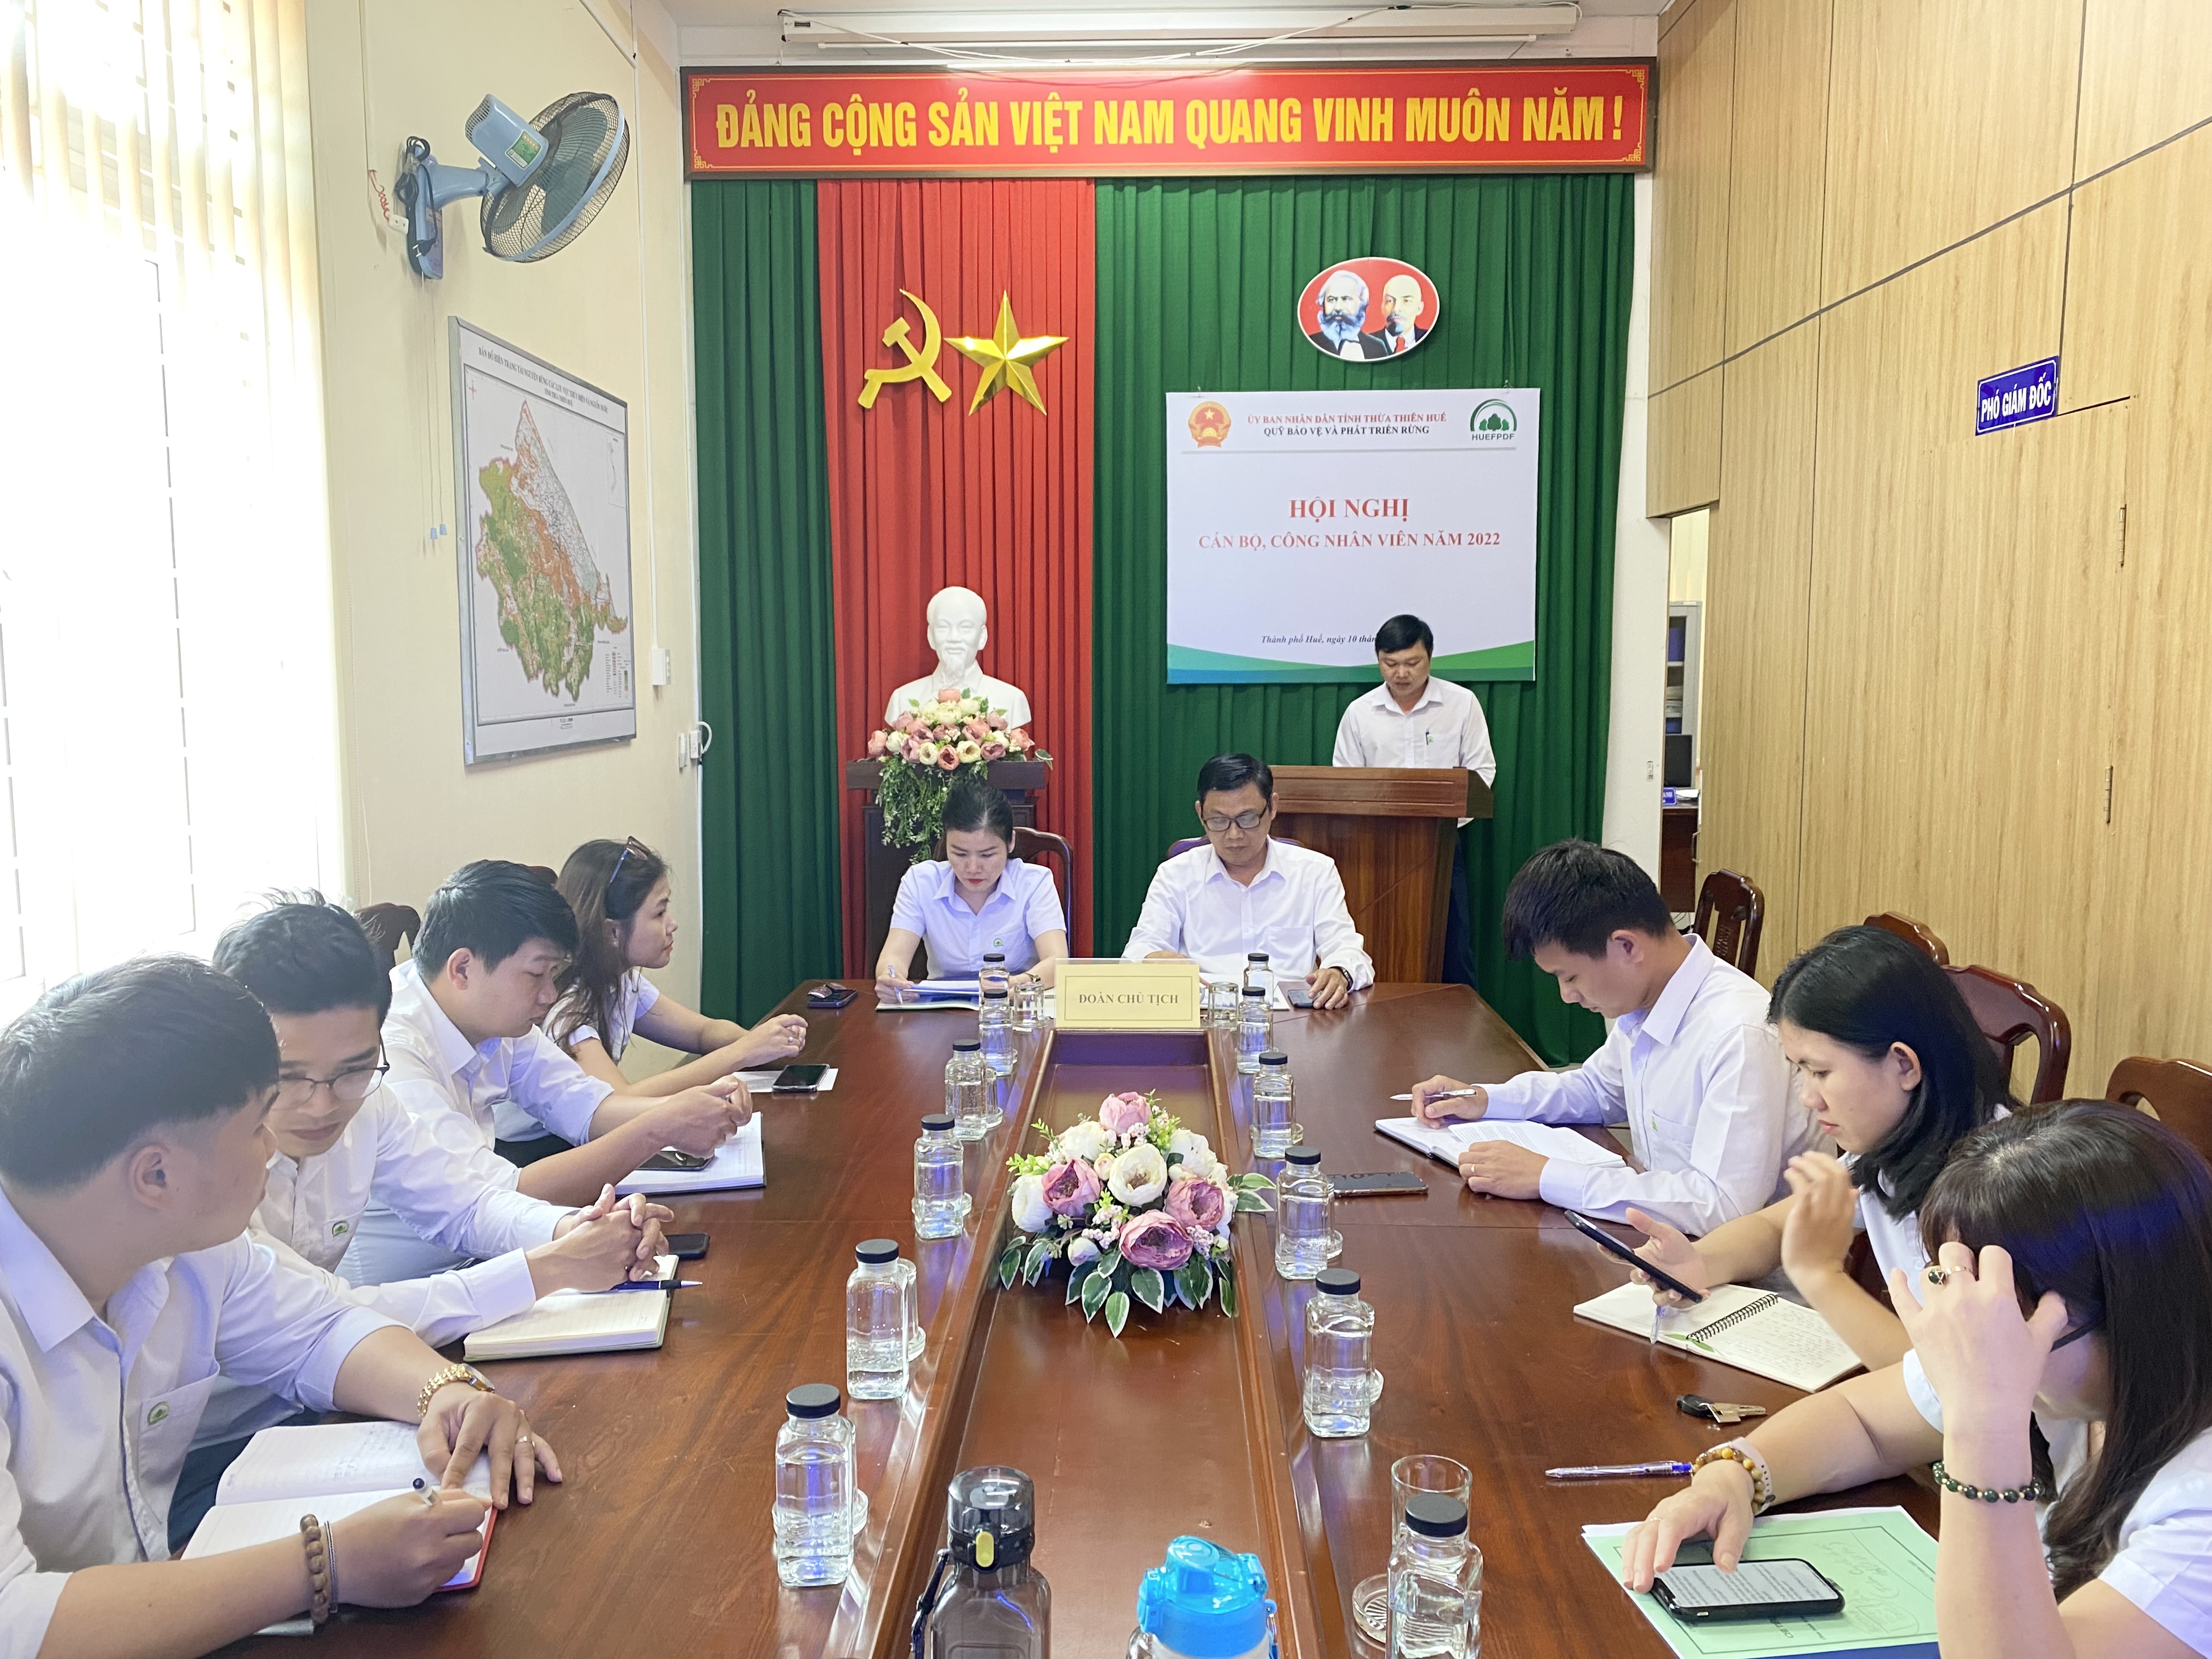 Quỹ Bảo vệ và Phát triển rừng tỉnh Thừa Thiên Huế tổ chức Hội nghị cán bộ, công nhân viên năm 2022